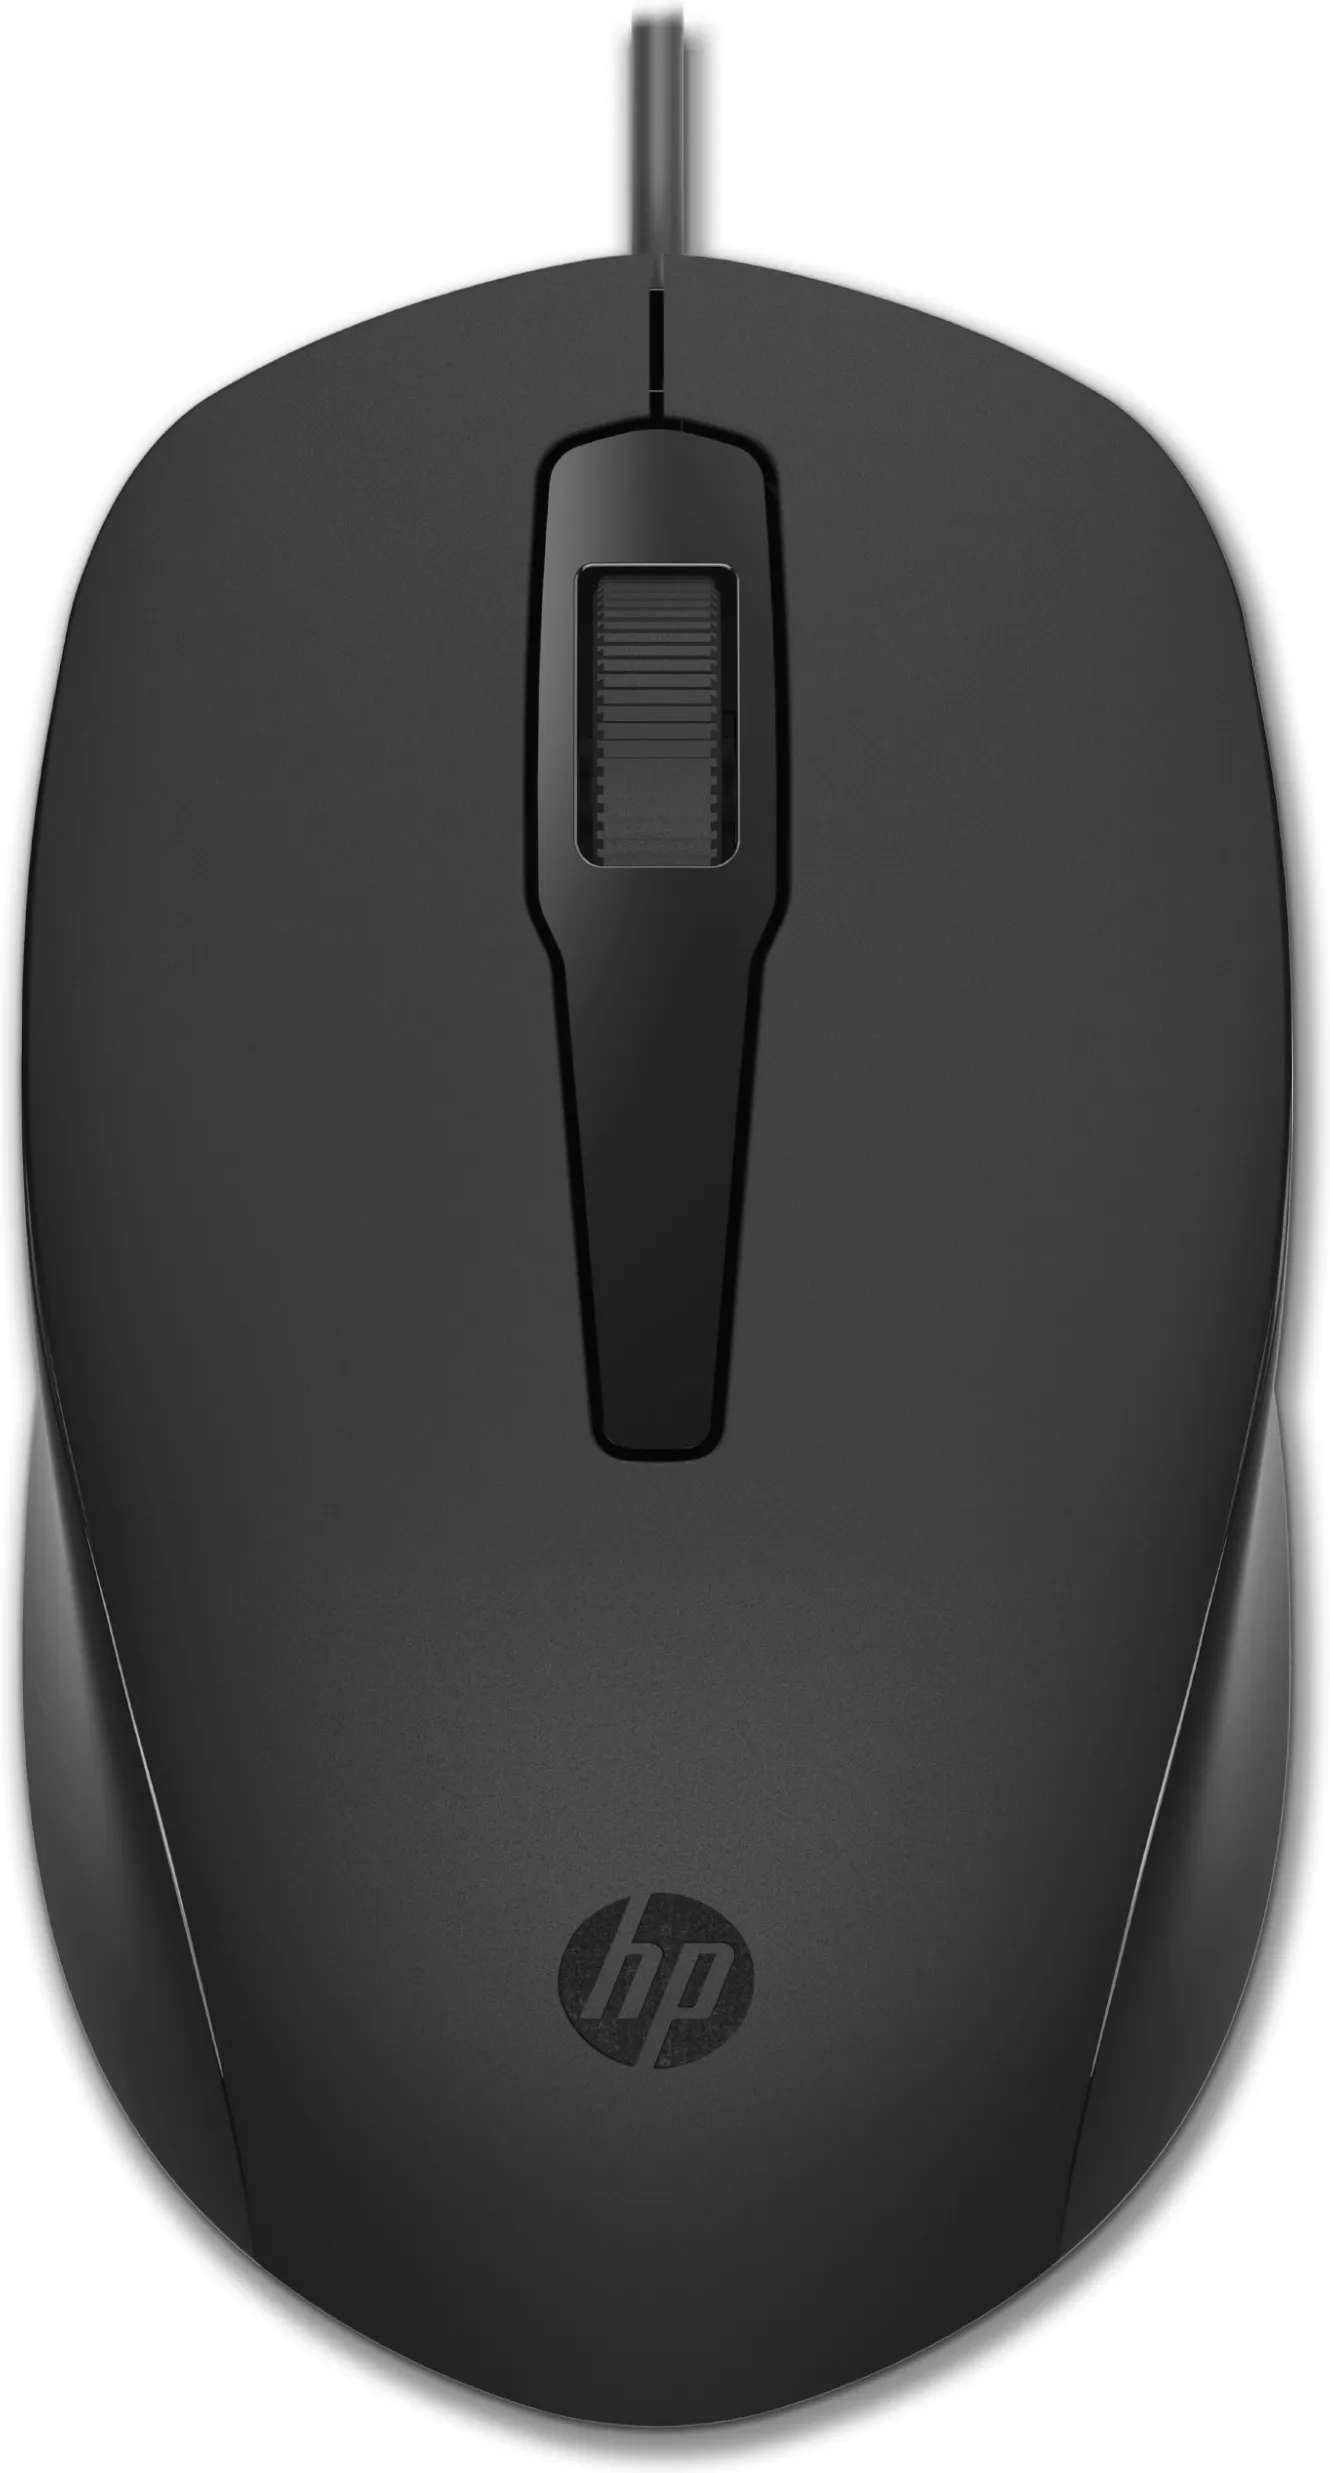 Vente HP 150 Wired Mouse HP au meilleur prix - visuel 8